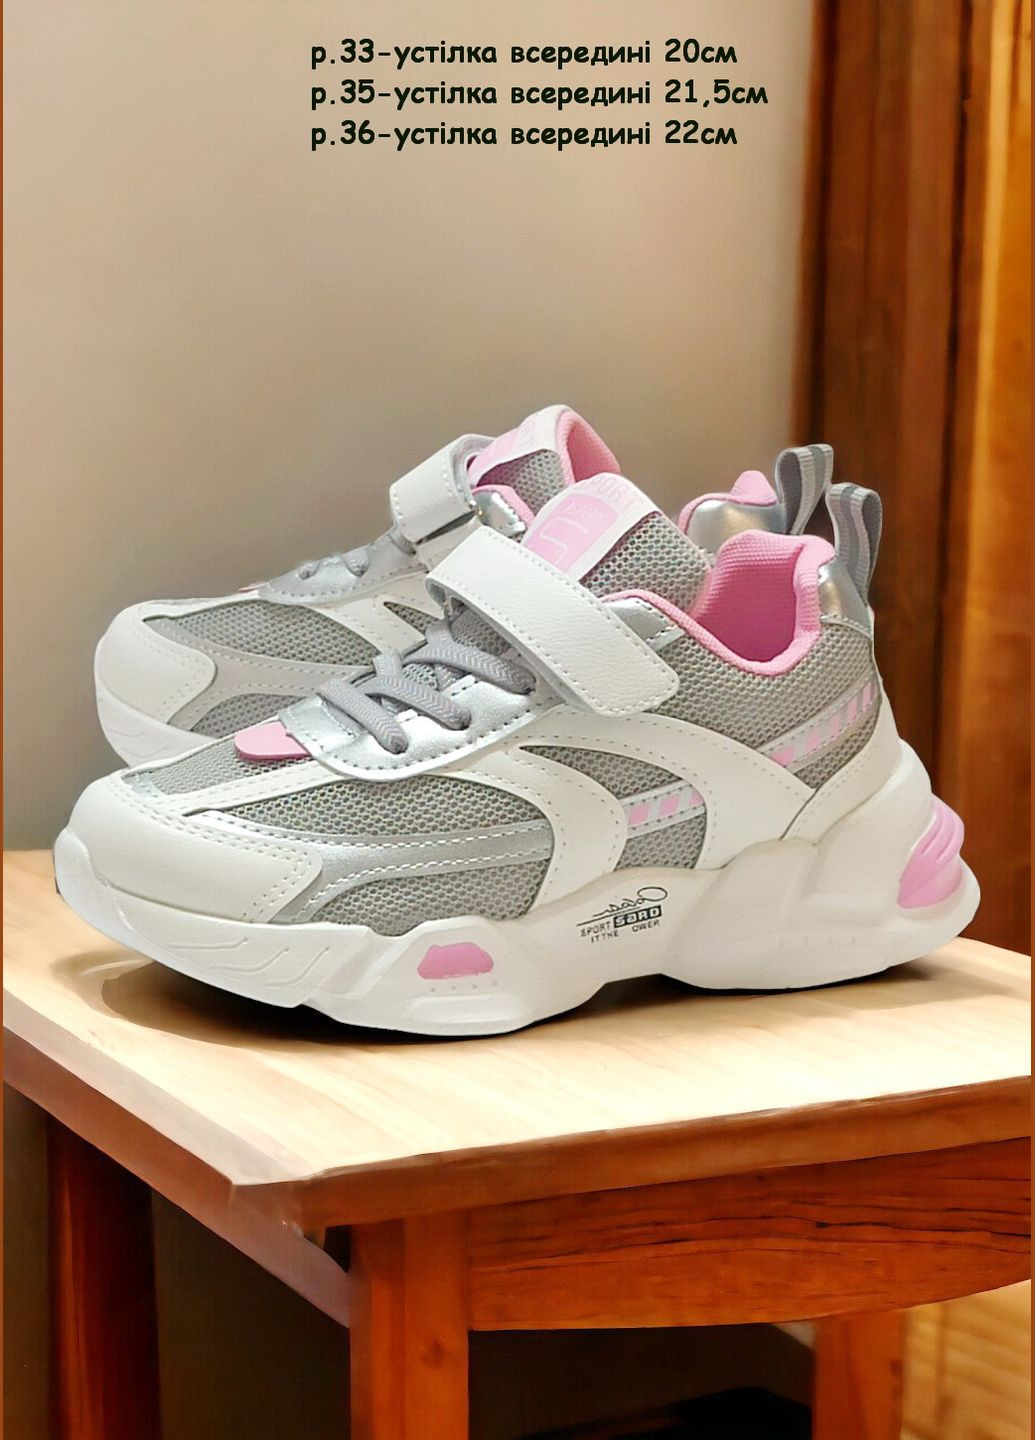 Белые демисезонные детские кроссовки для девочки 9041 белые с розовым Boyang